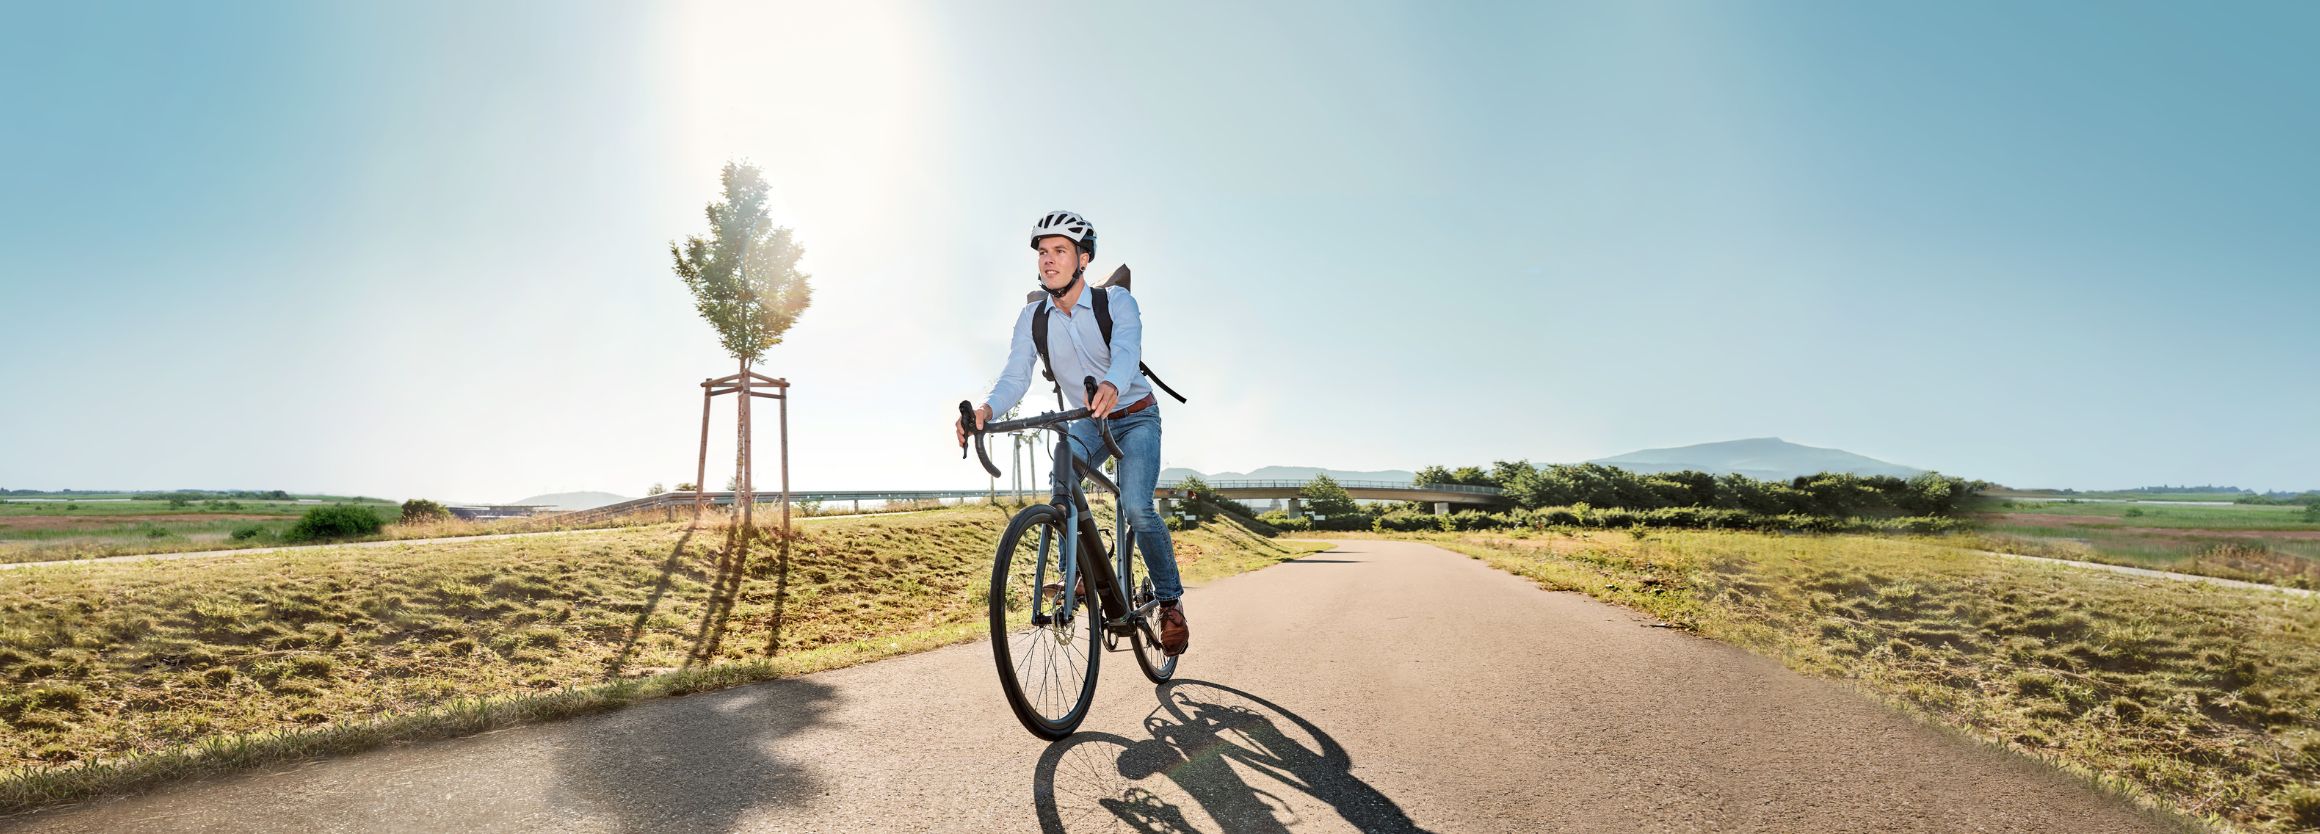 Dienstrad-Leasing: Auf dem Fahrrad zu einer nachhaltigen Mobilität